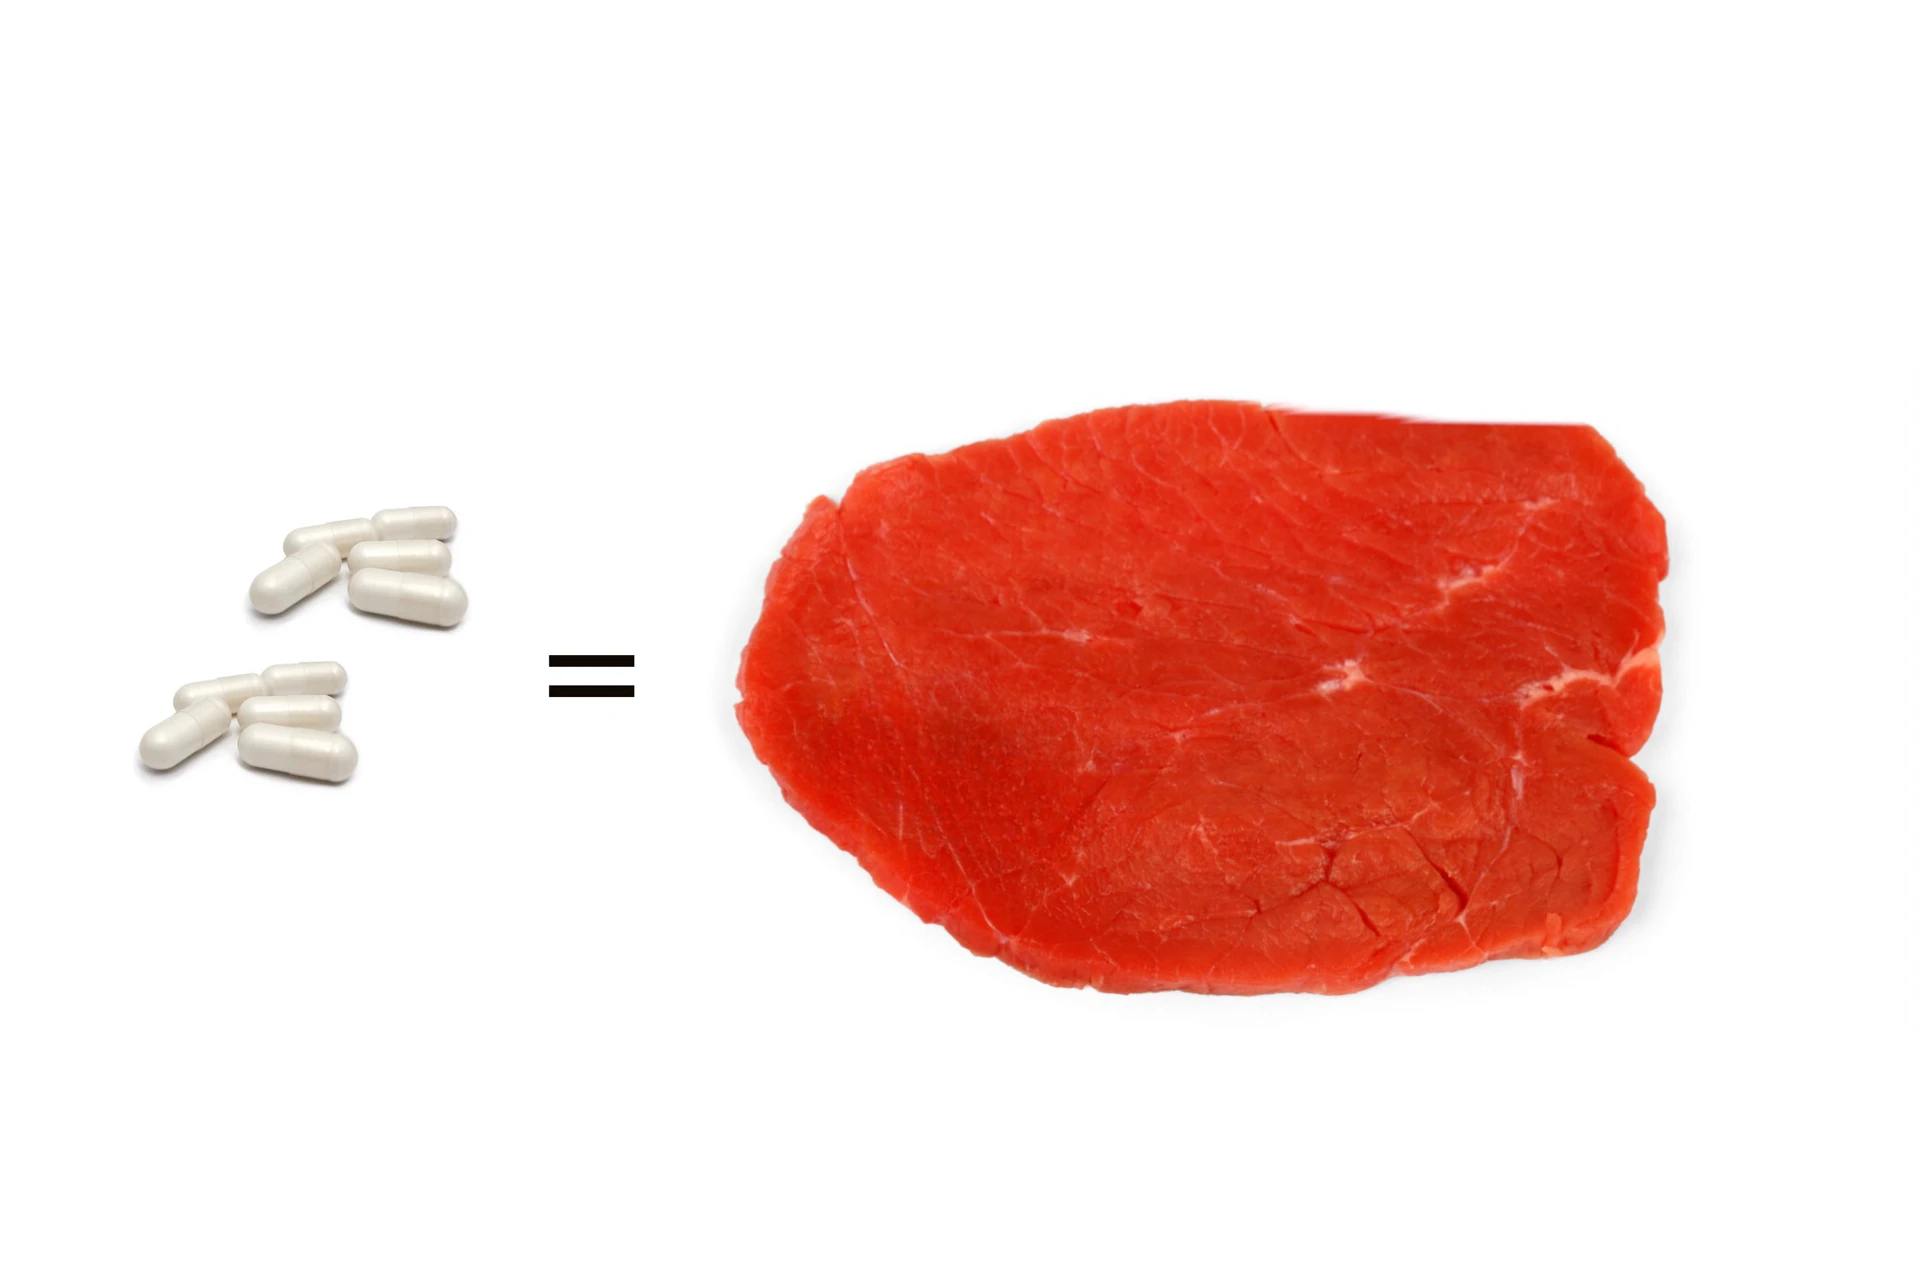 Man sieht zehn kleine weiße Kapseln und daneben ein großes Stück rotes Fleisch. Das Bild zeigt Moretti Kapseln und das zehn Stück davon so viel Eiweiß enthalten wie ein großes Steak.